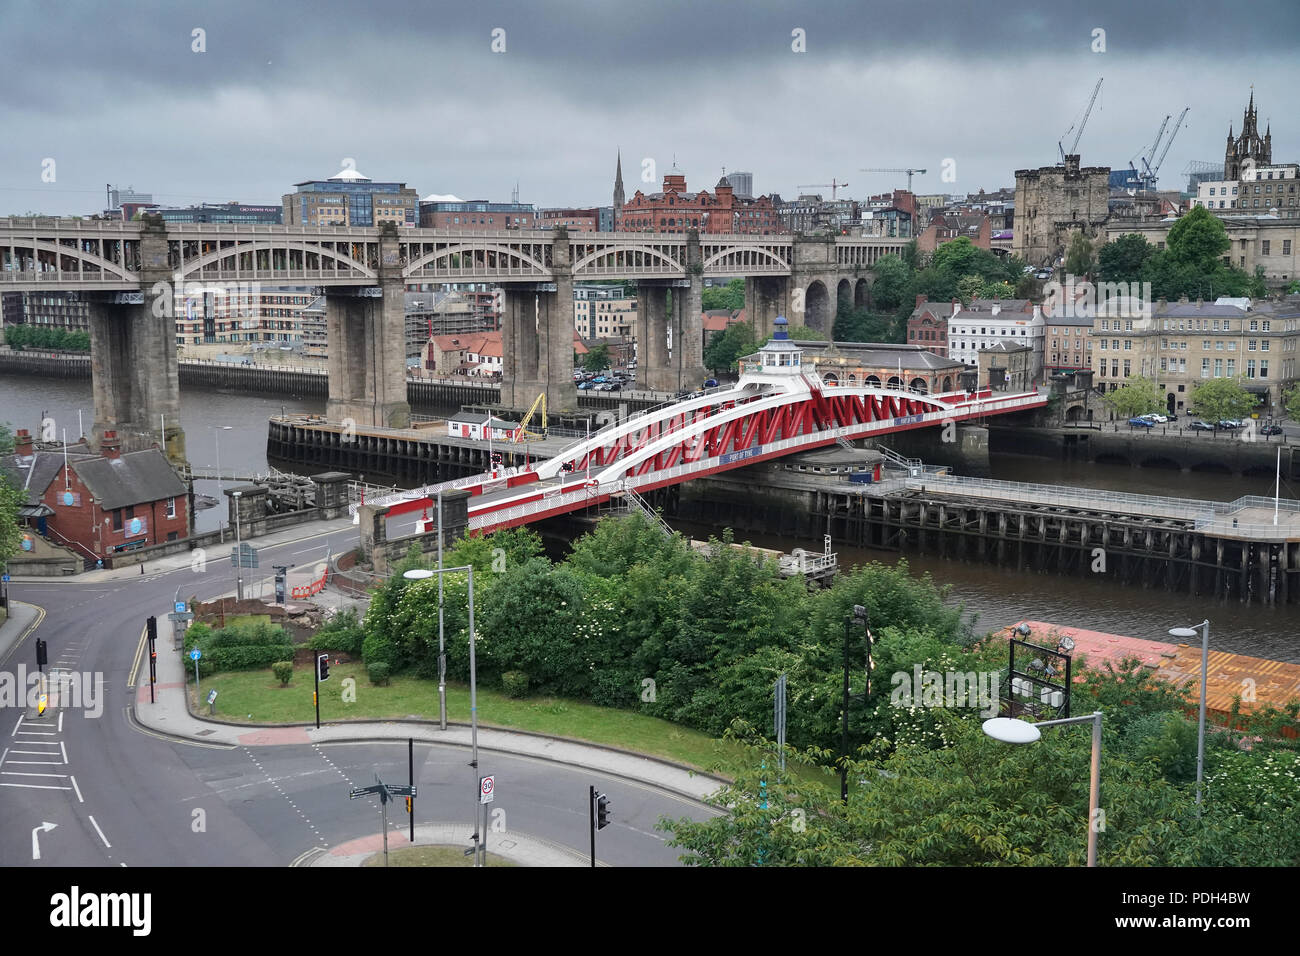 Une vue sur le pont tournant (premier plan) et le pont de haut niveau dans la ville de Newcastle, Royaume-Uni. Date de la photo : le lundi 11 juin 2018. Photo : Roger Garfie Banque D'Images